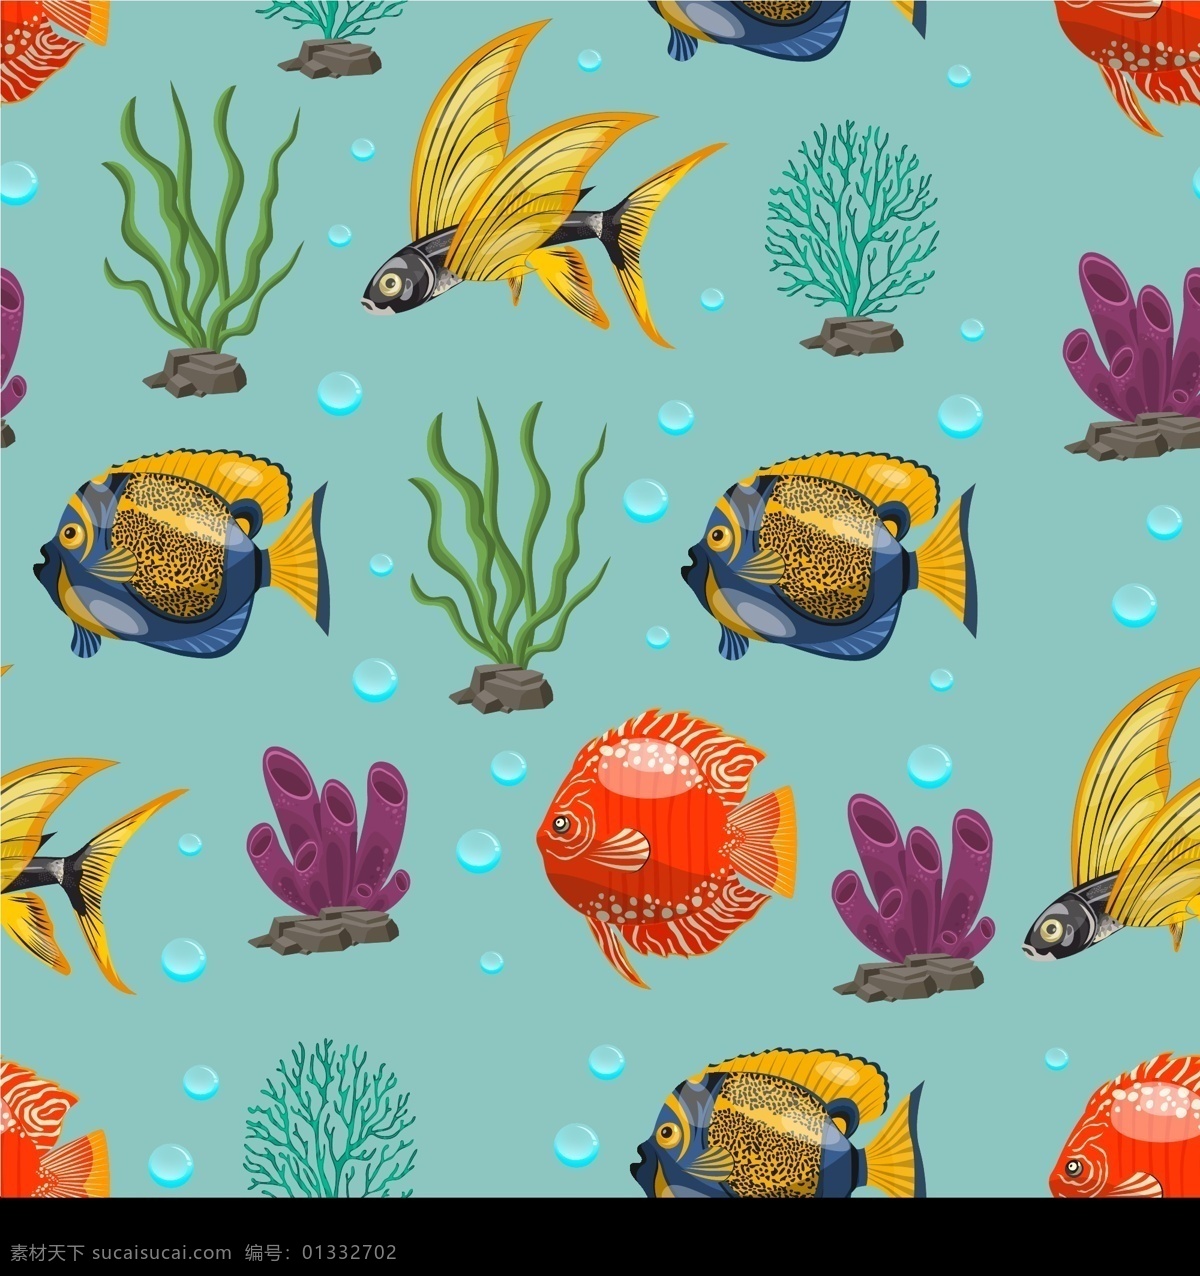 矢量海洋生物 矢量金鱼 彩色鱼 观赏鱼 卡通鱼 手绘鱼 鱼插画 彩色海草 海洋生物图案 海洋生物背景 卡通海洋生物 动物 生物世界 海洋生物